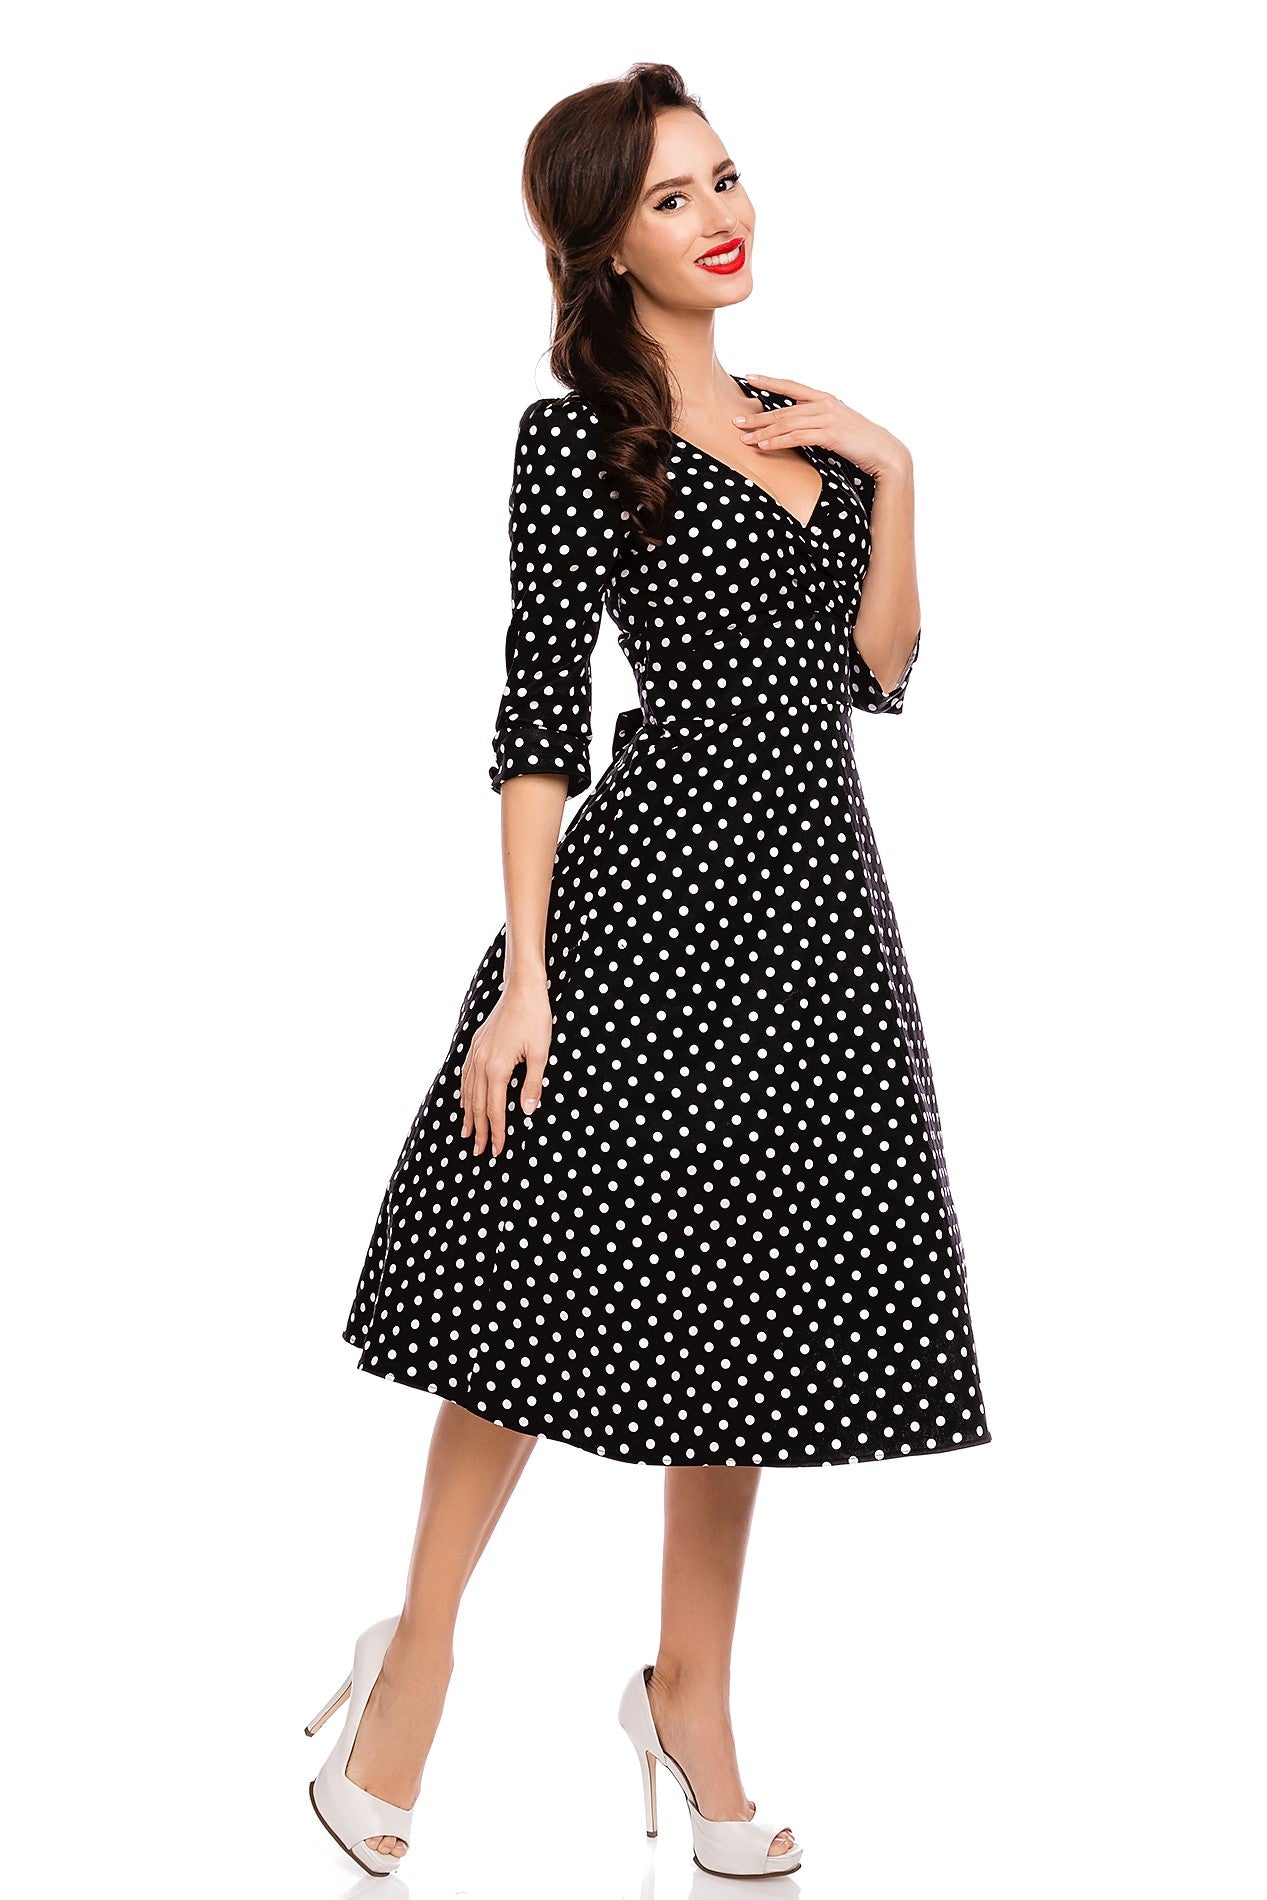 Long Sleeve 50s Style Swing Dress in Black Polka